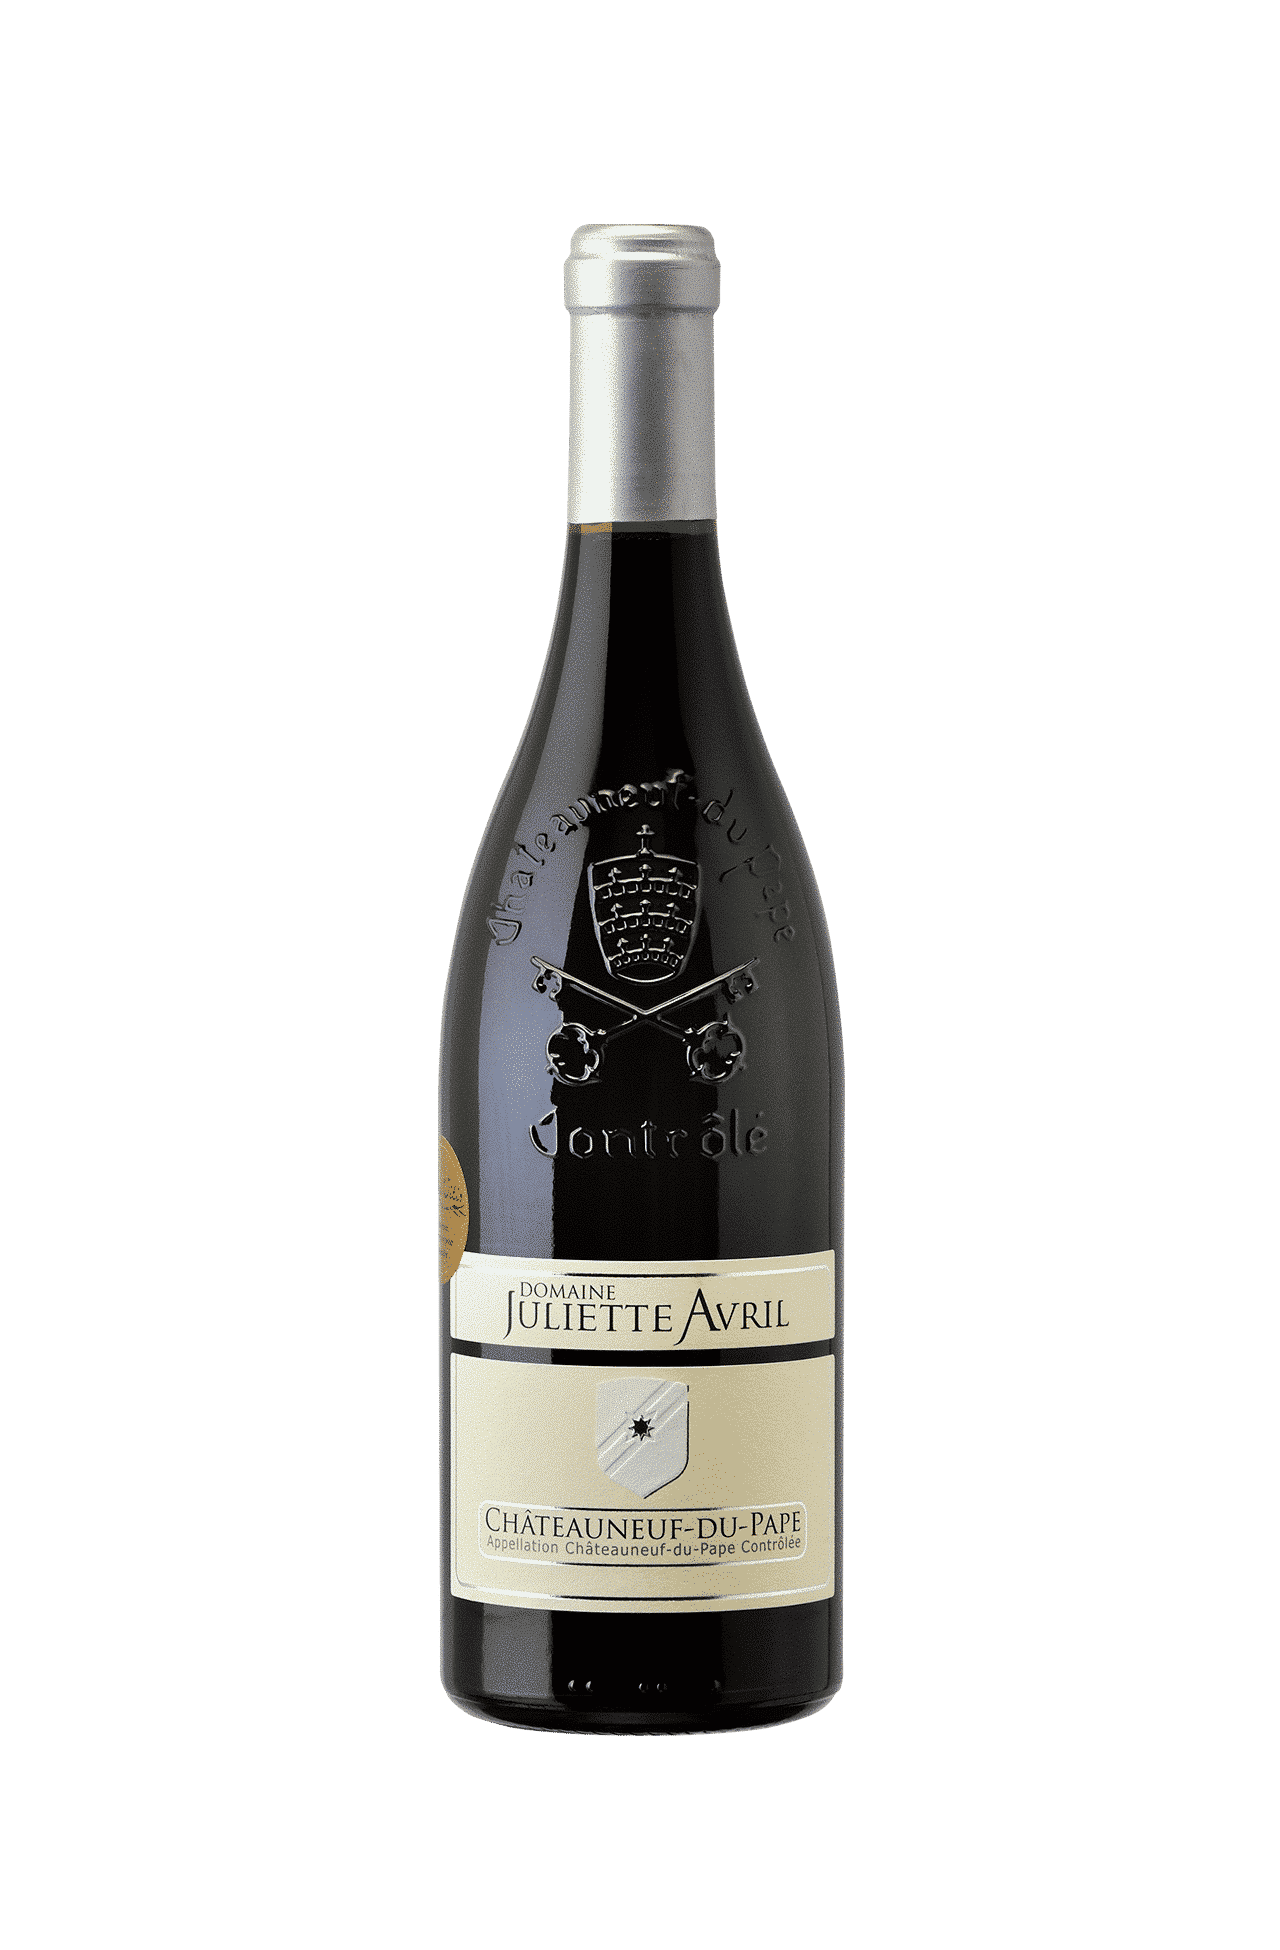 Coffret découverte French Bloom  Vin pétillant sans alcool BIO – Ladhidh